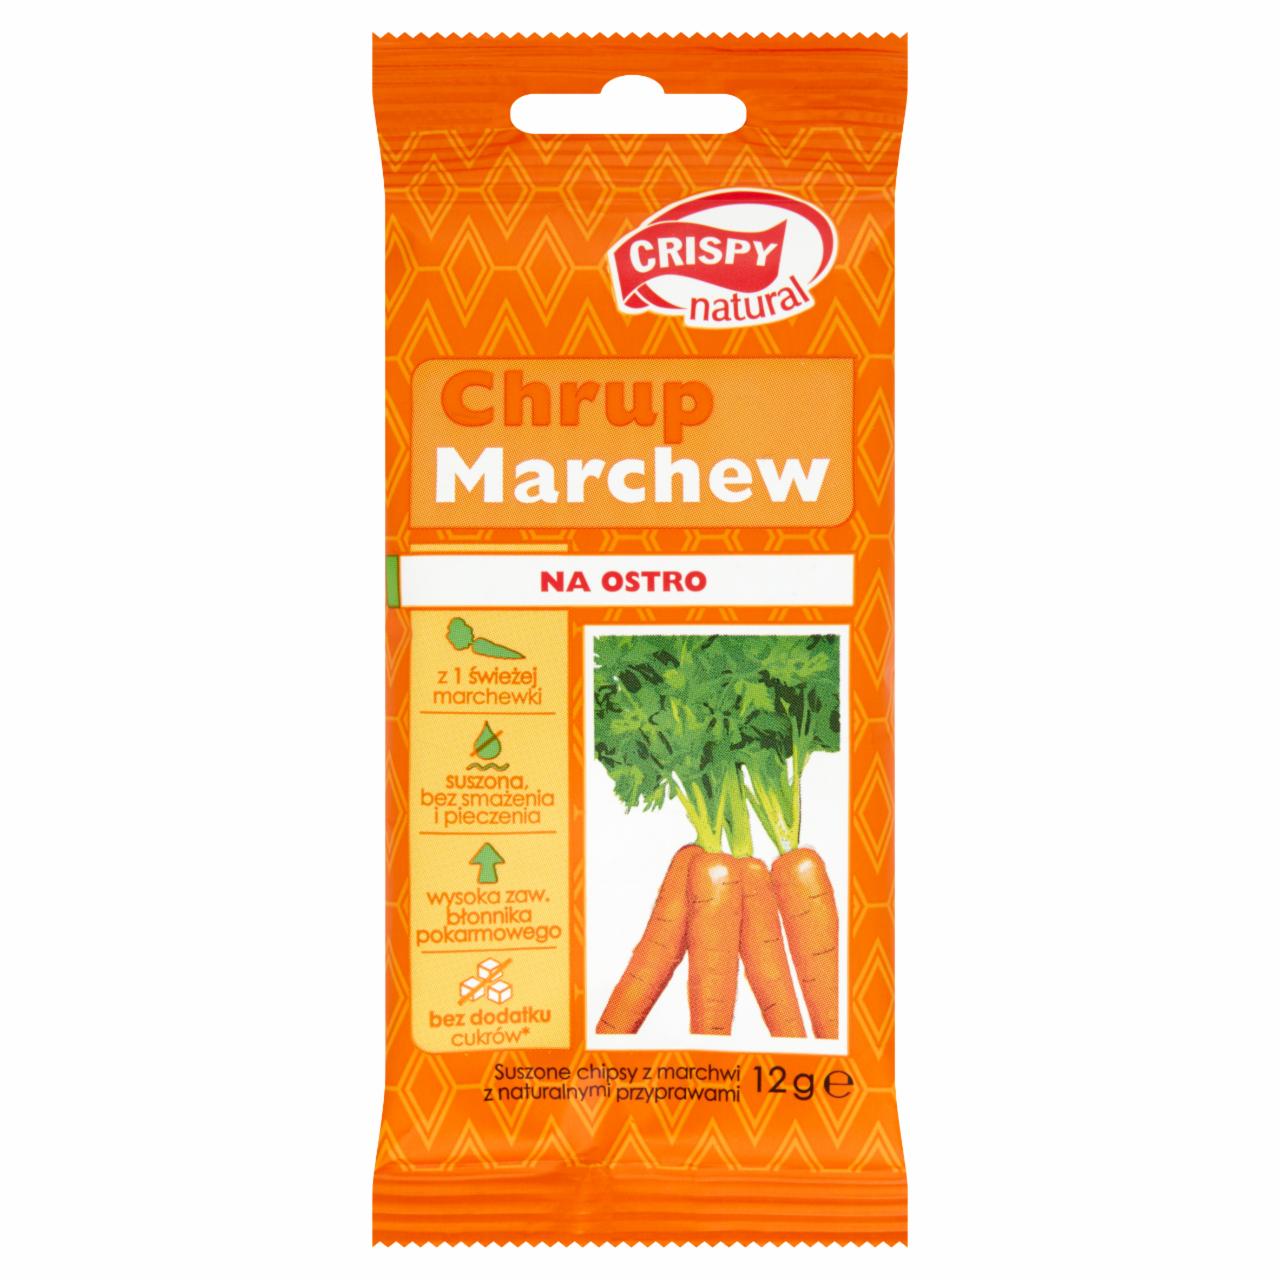 Фото - Чипсы из моркови Chrup Marchew Crispy Natural